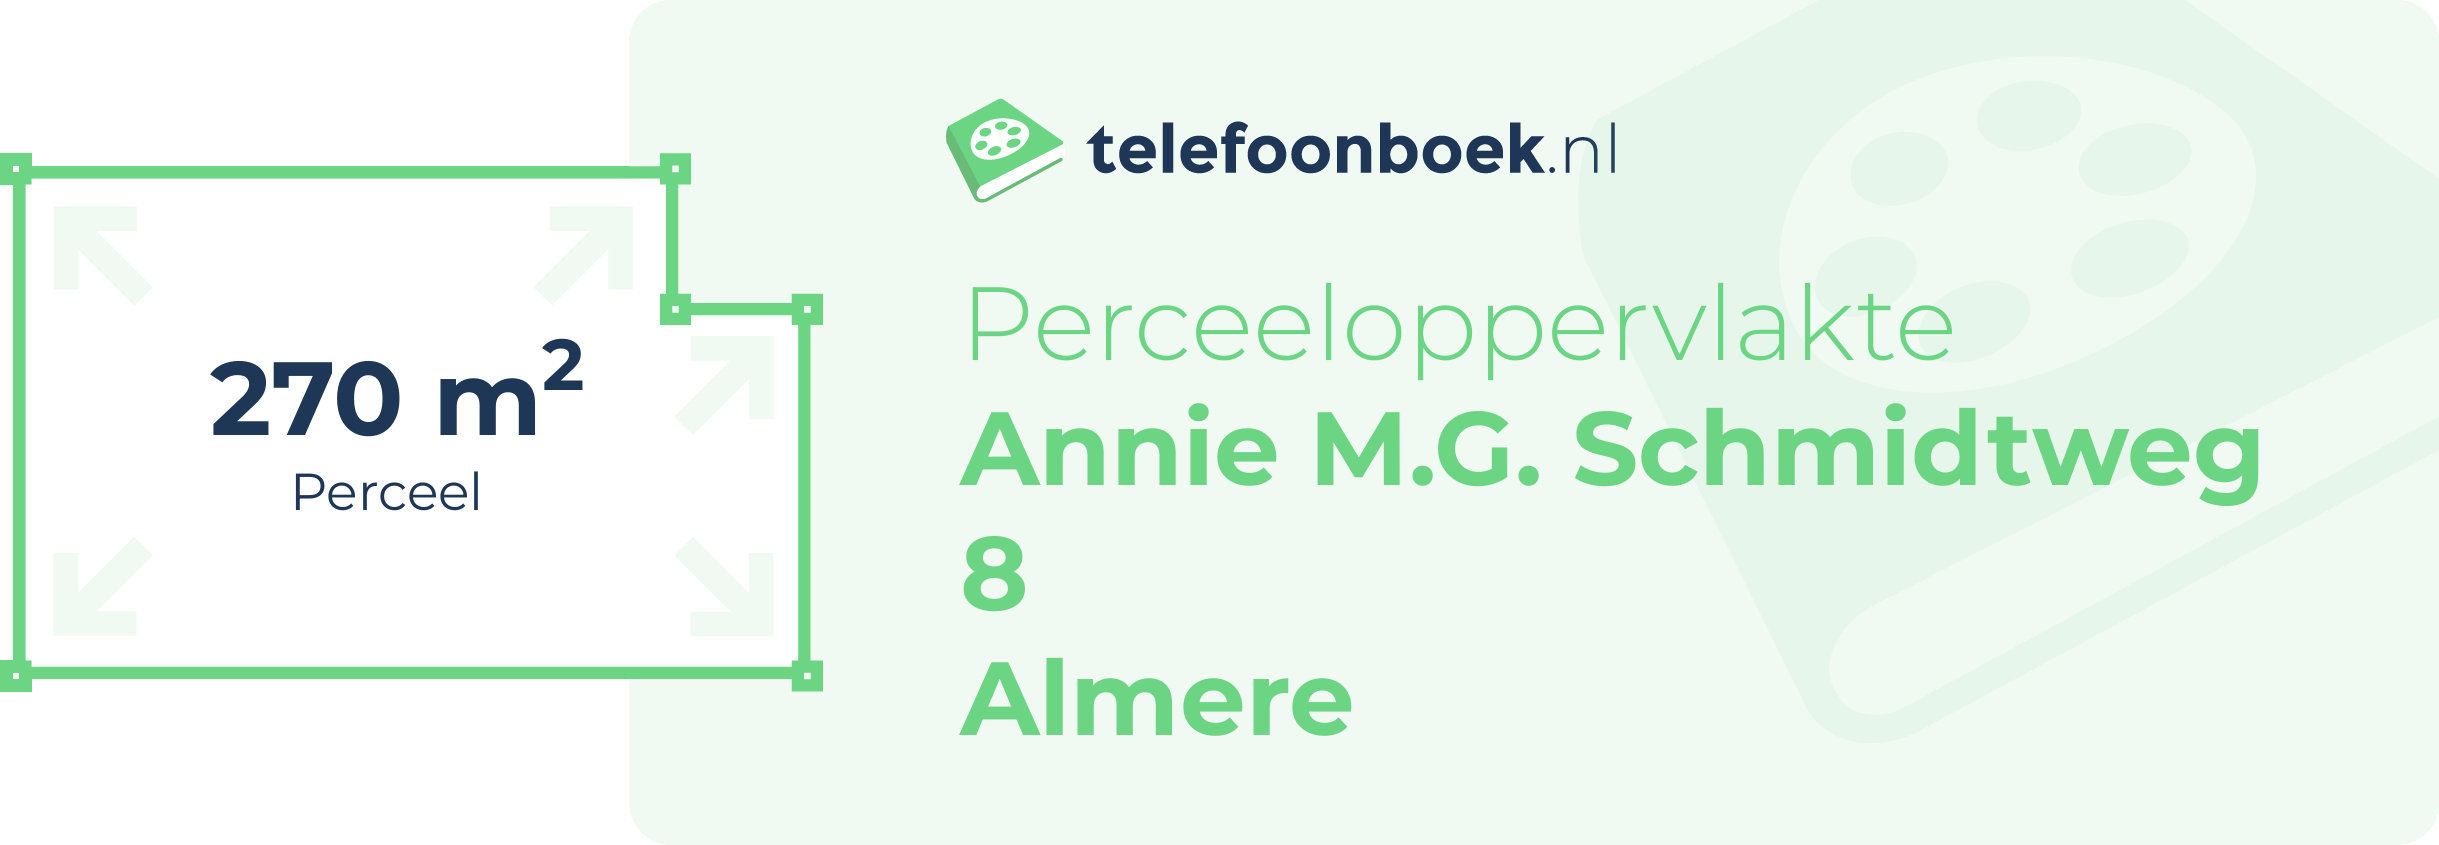 Perceeloppervlakte Annie M.G. Schmidtweg 8 Almere